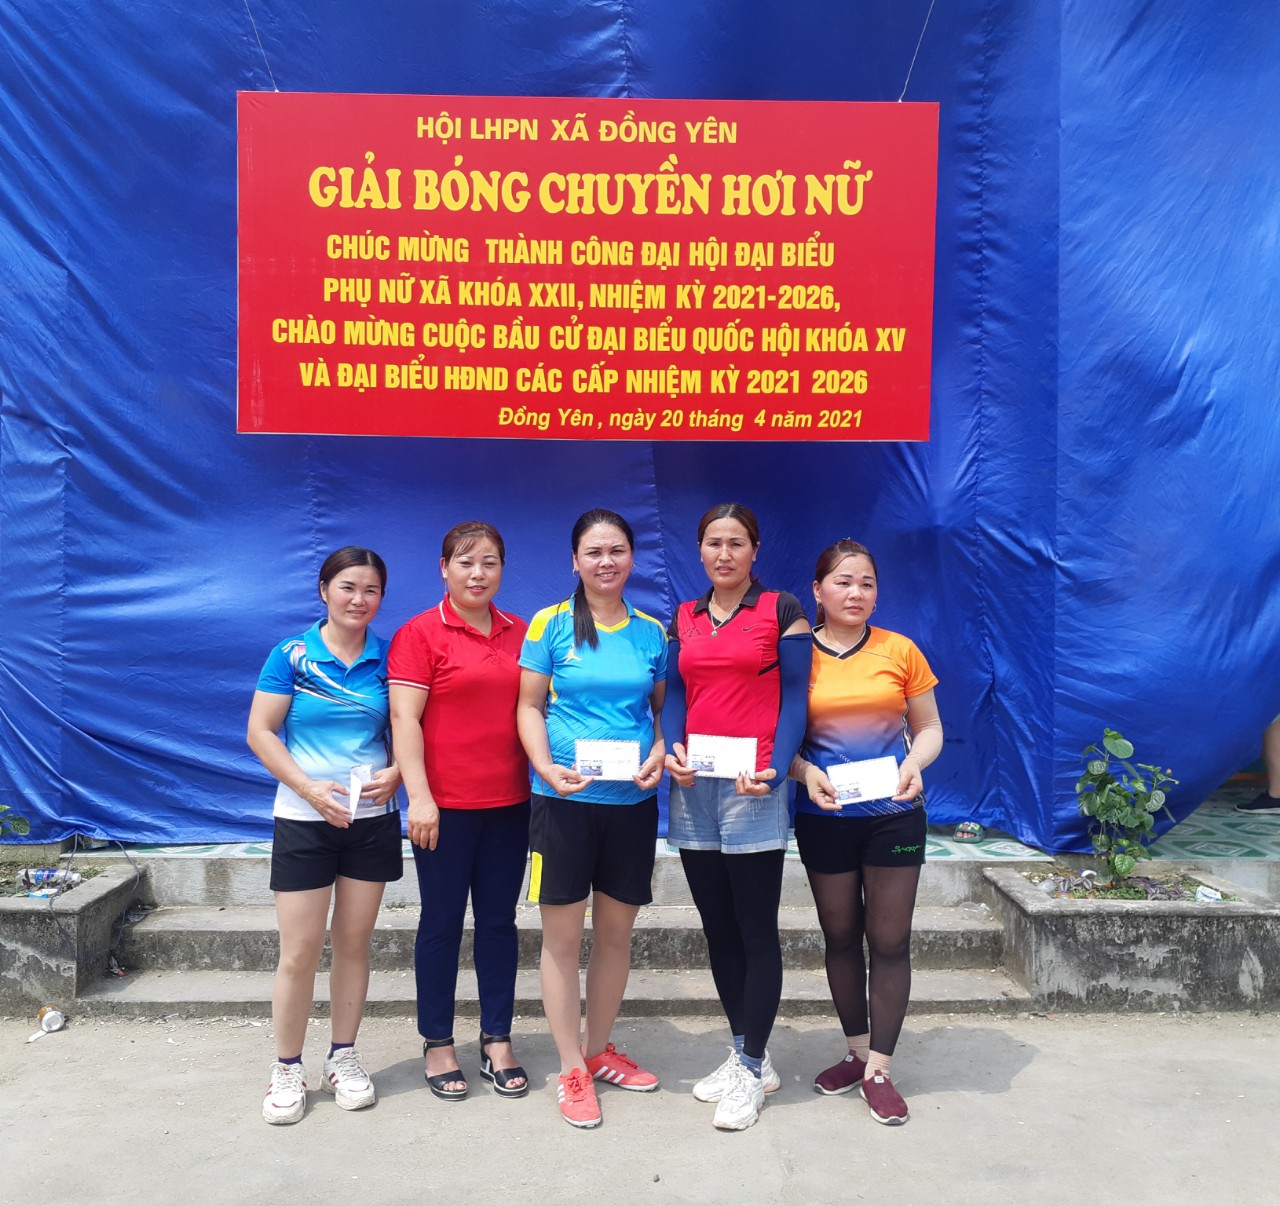 Bế mạc giải bóng chuyền hơi nữ xã Đồng Yên chào mừng thành công đại hội hội LHPN xã khóa XXII, nhiệm kỳ 2021 – 2026